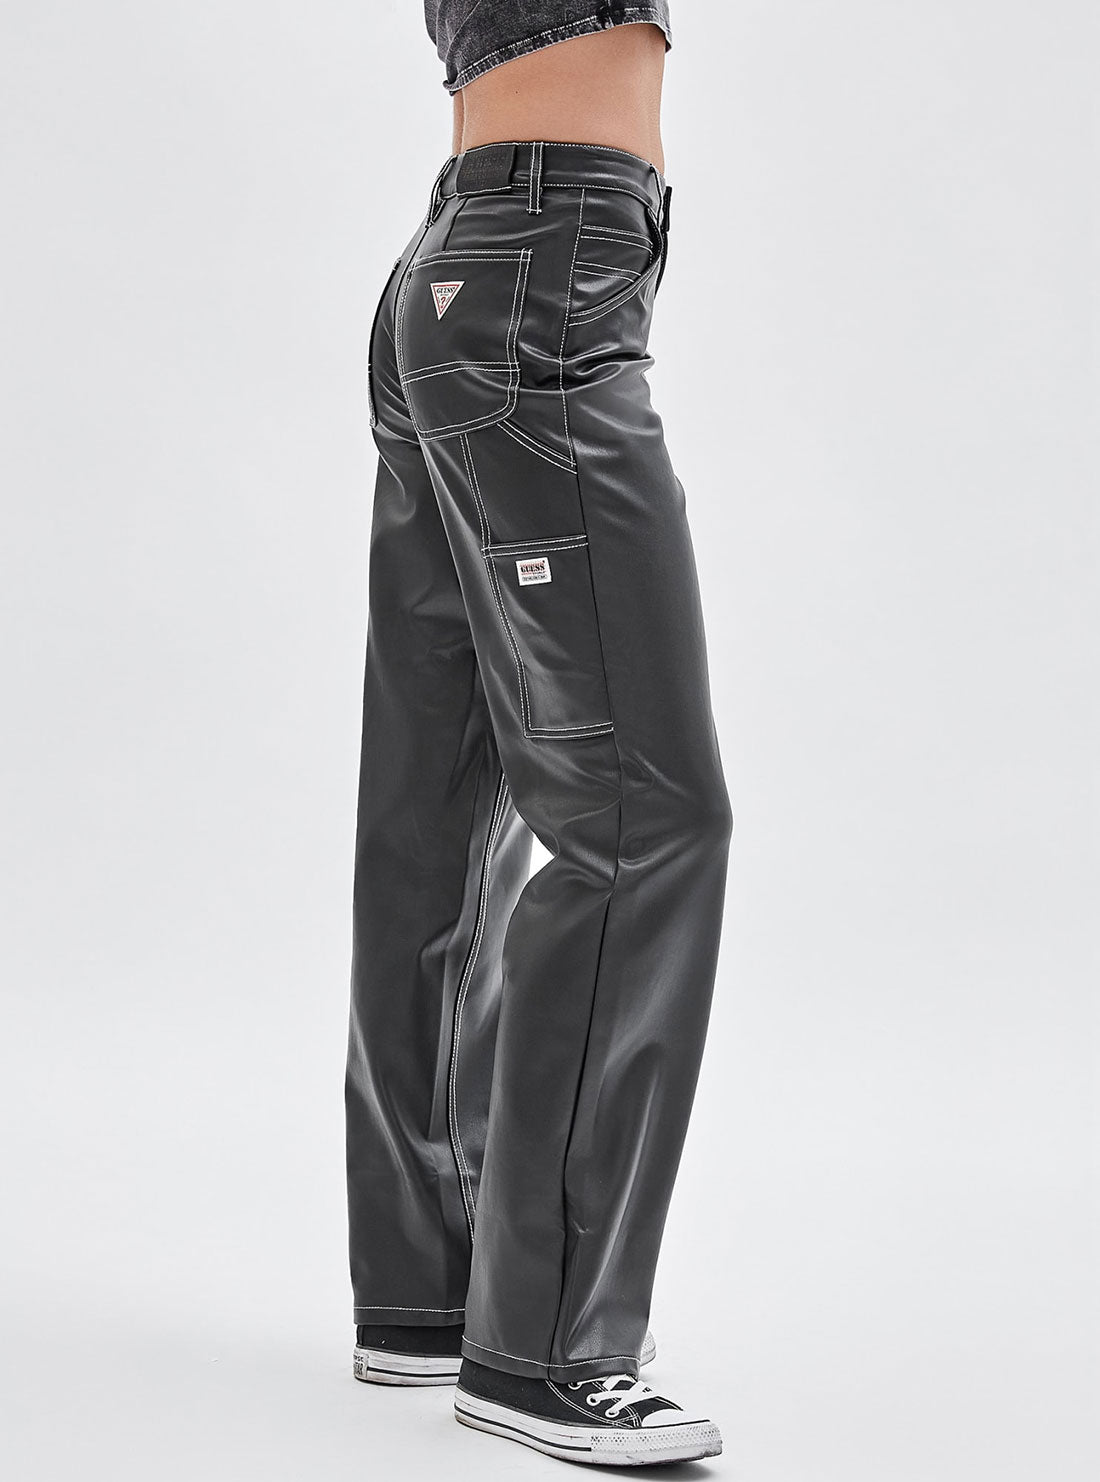 GUESS Women's Guess Originals Black Faux Leather Carpenter Pants W2BG10K8S30 Side View